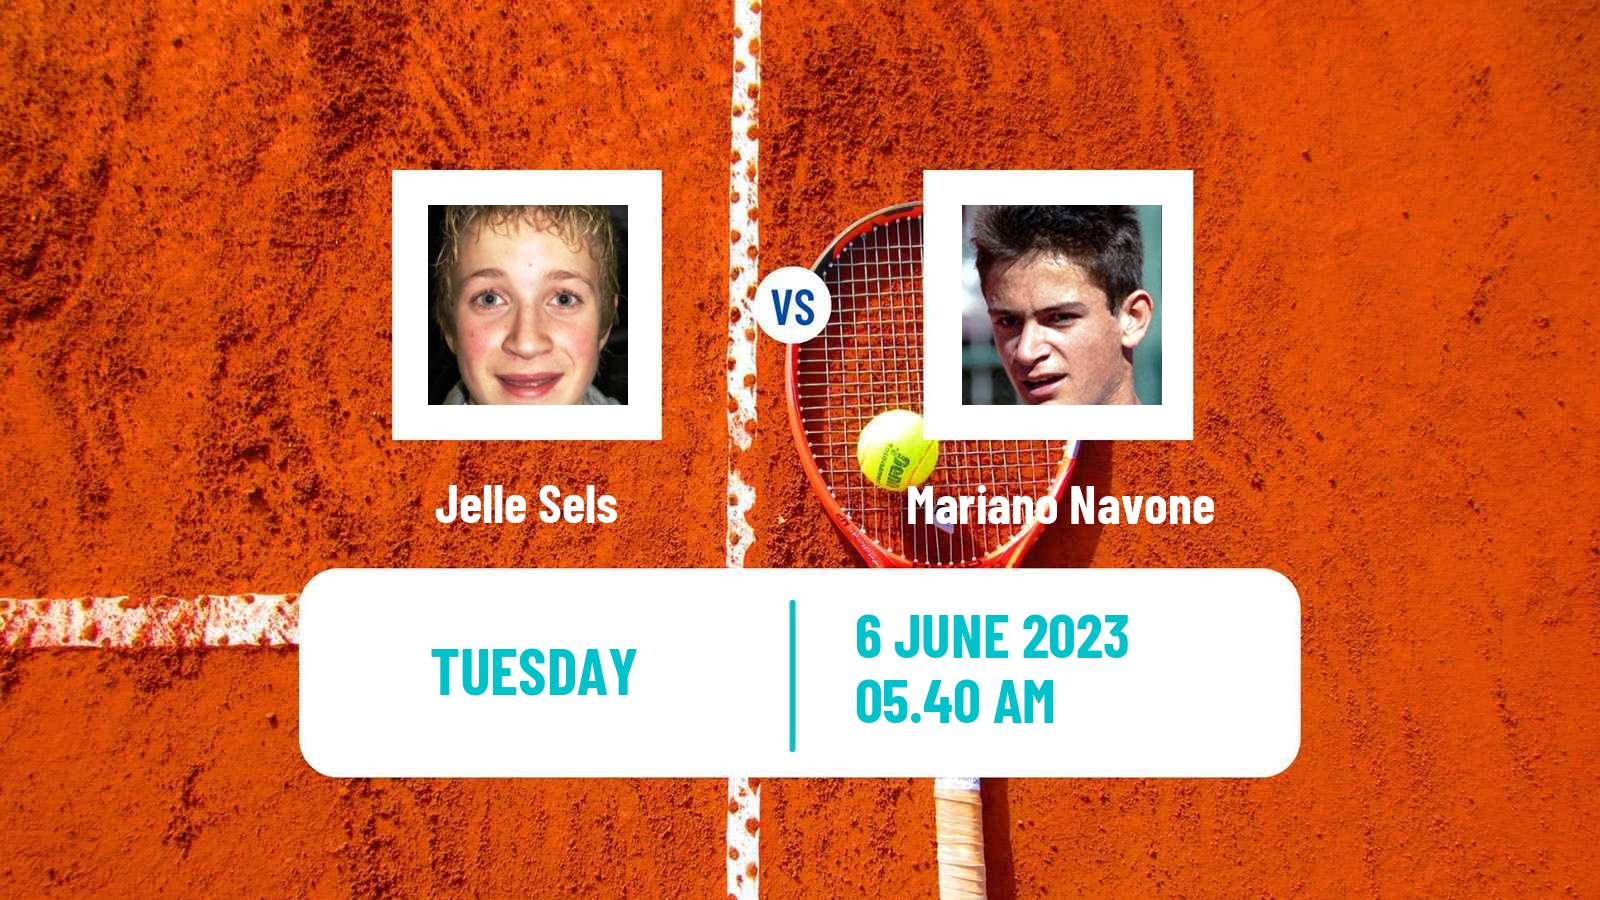 Tennis Prostejov Challenger Men Jelle Sels - Mariano Navone